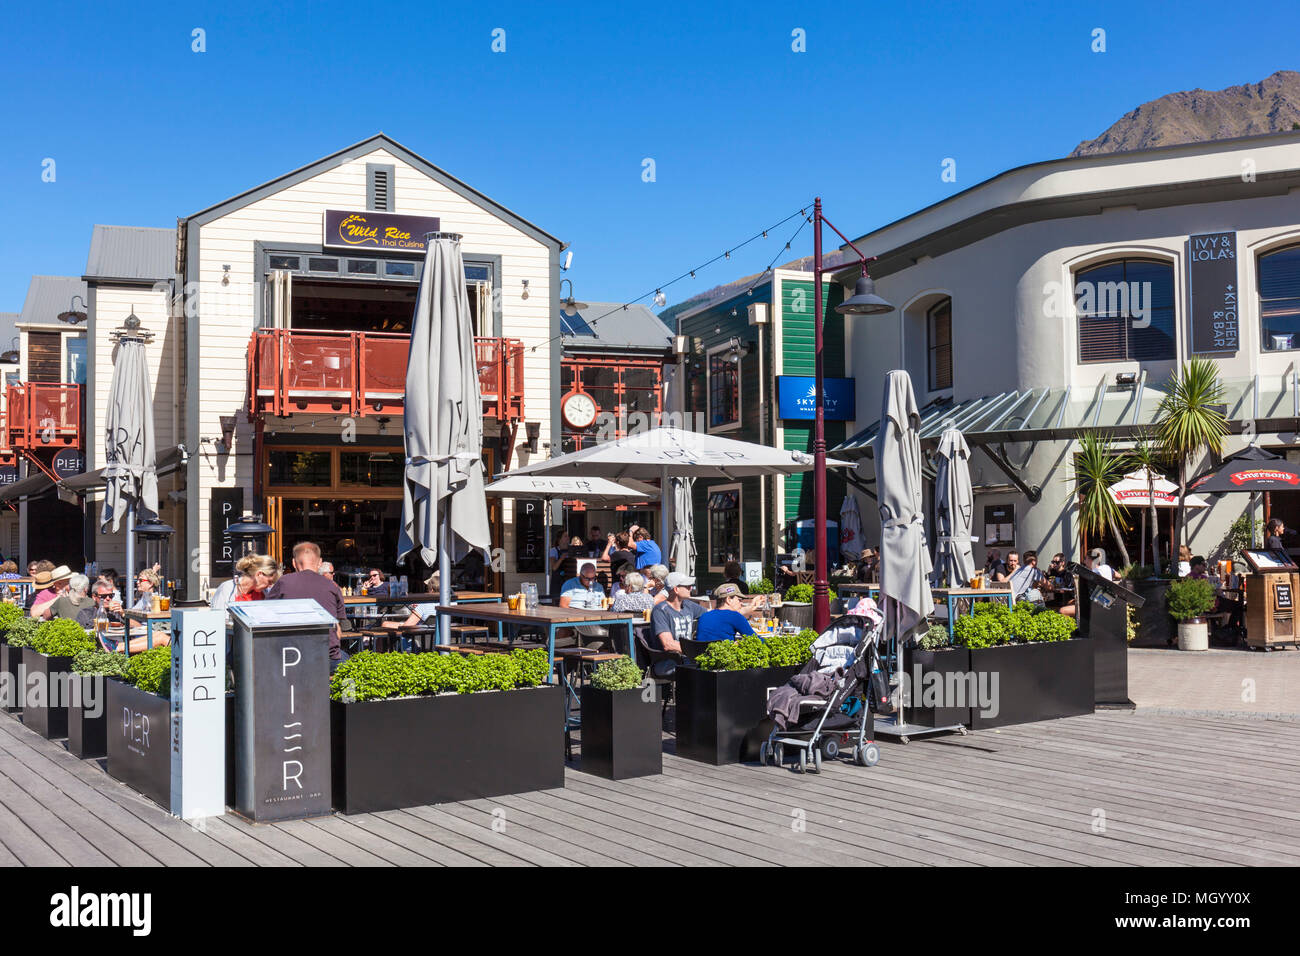 Queenstown, Südinsel Neuseeland bars Efeu und Lola's und Pier Restaurant an der Küste in der Nähe von Steamer quay Innenstadt Queenstown Neuseeland nz Stockfoto